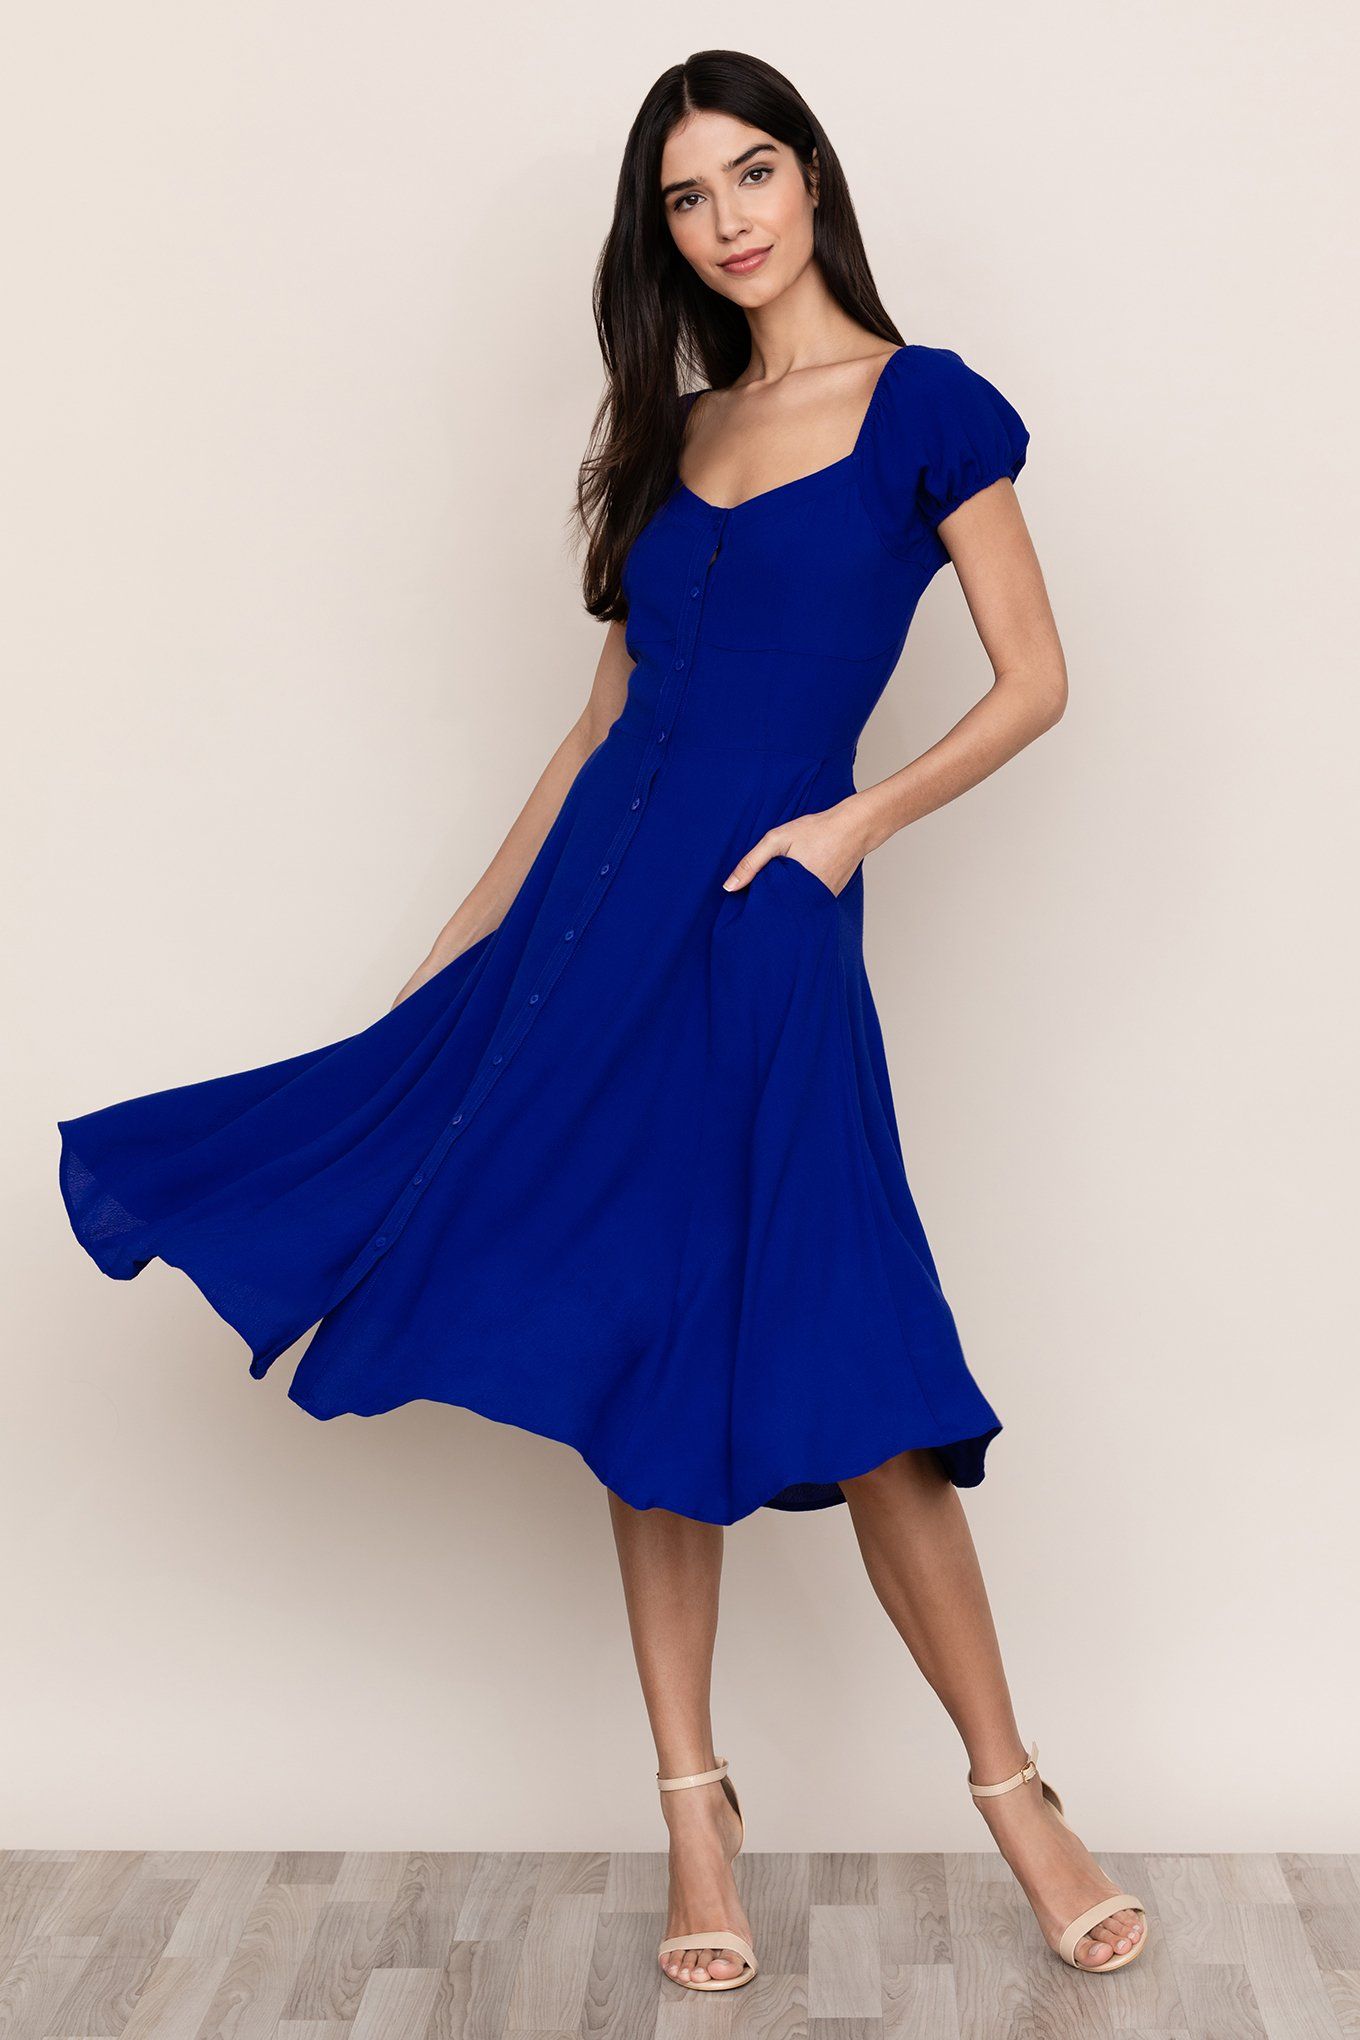 Mercer Street Dress | Royal Blue Midi Dress -   17 dress Blue midi ideas